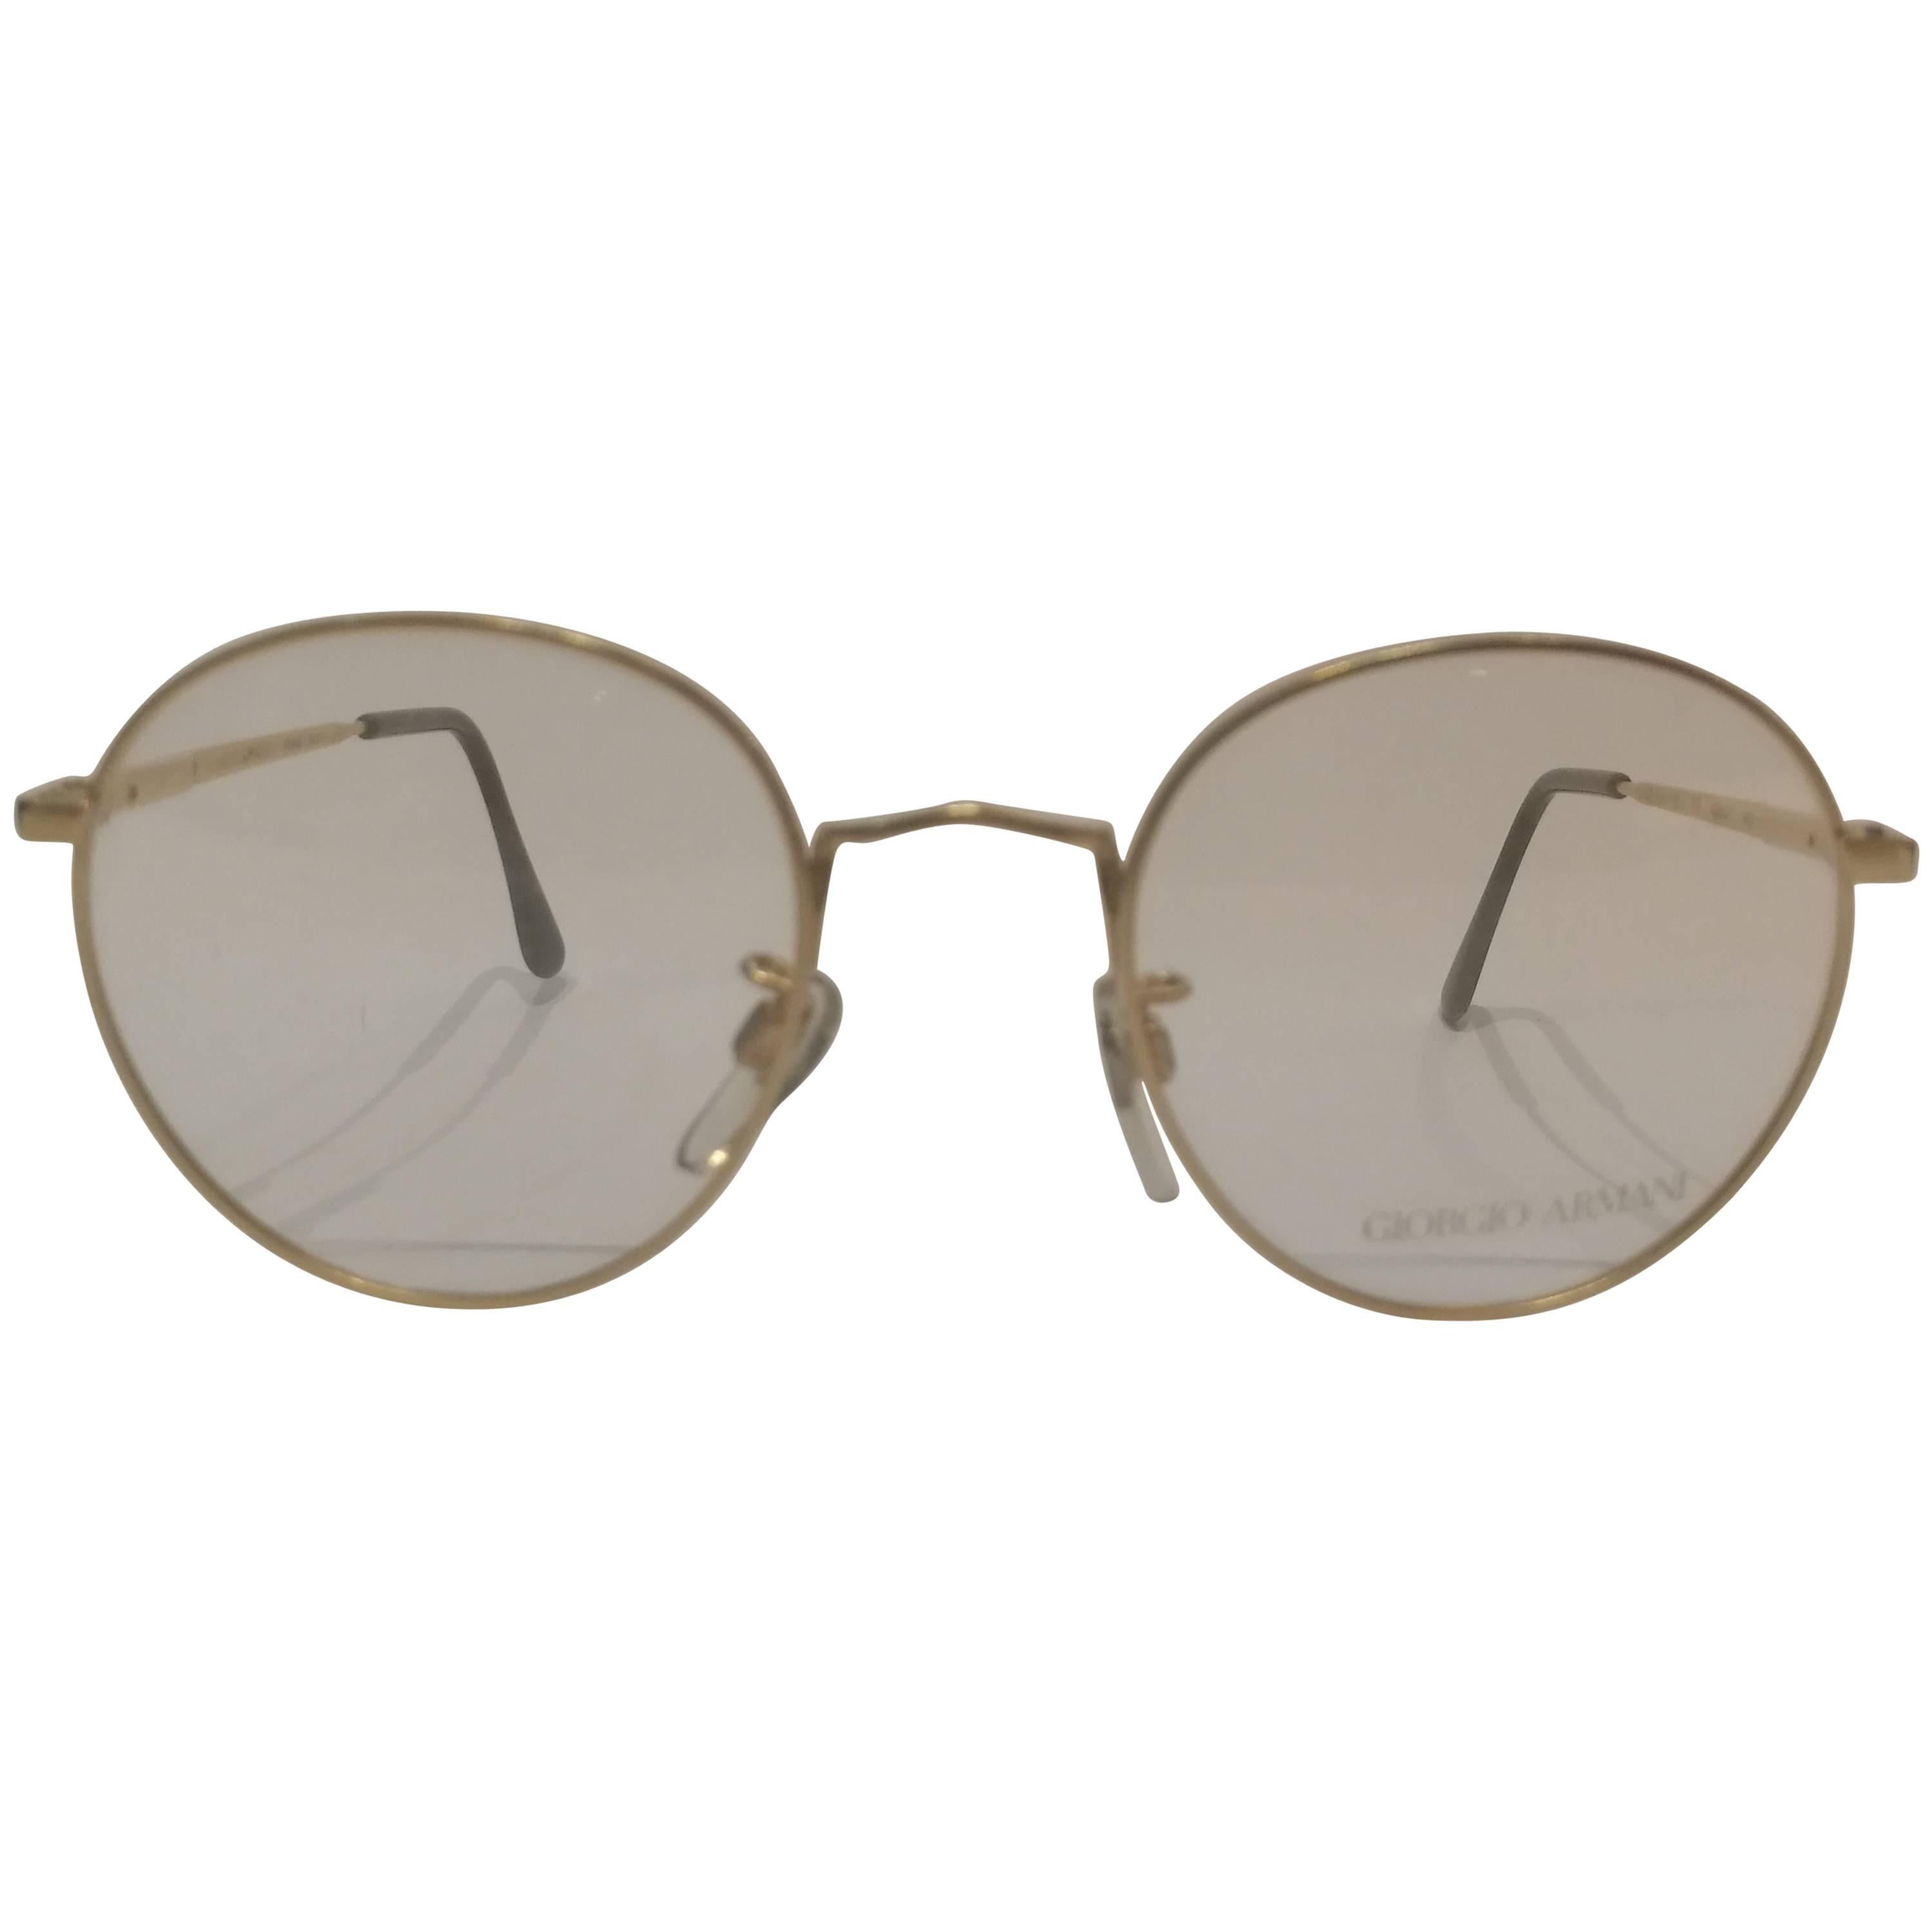 Giorgio Armani Frame glasses